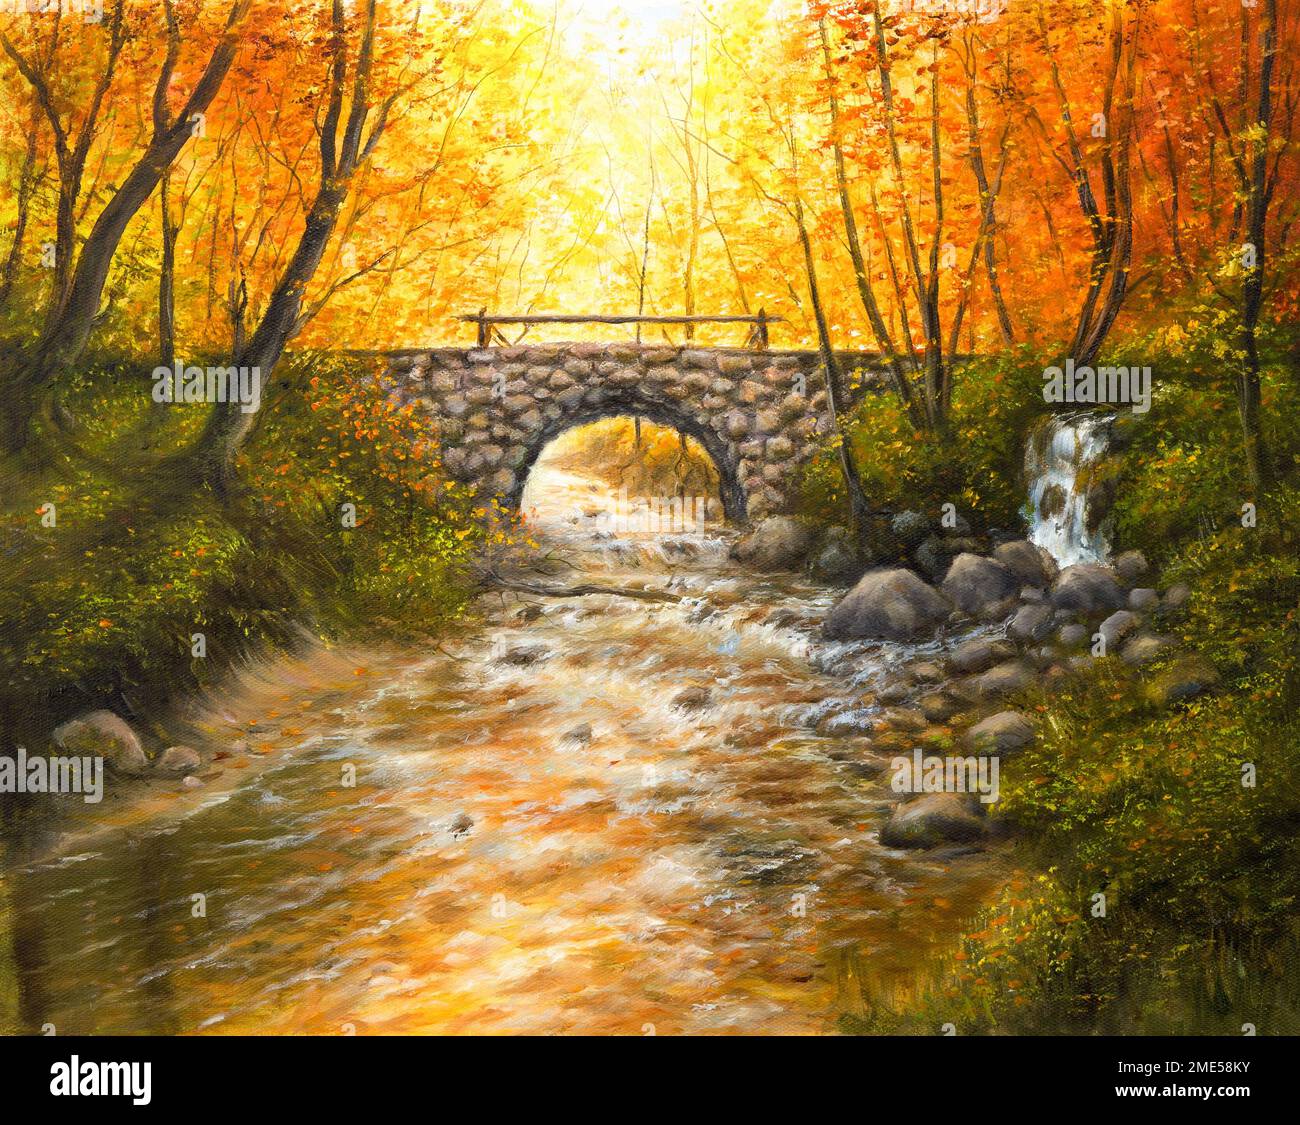 Peinture à l'huile originale de paysage d'automne magnifique, forêt, pont de pierre et rivière sur toile.Impressionnisme moderne, modernisme, marinisme Banque D'Images